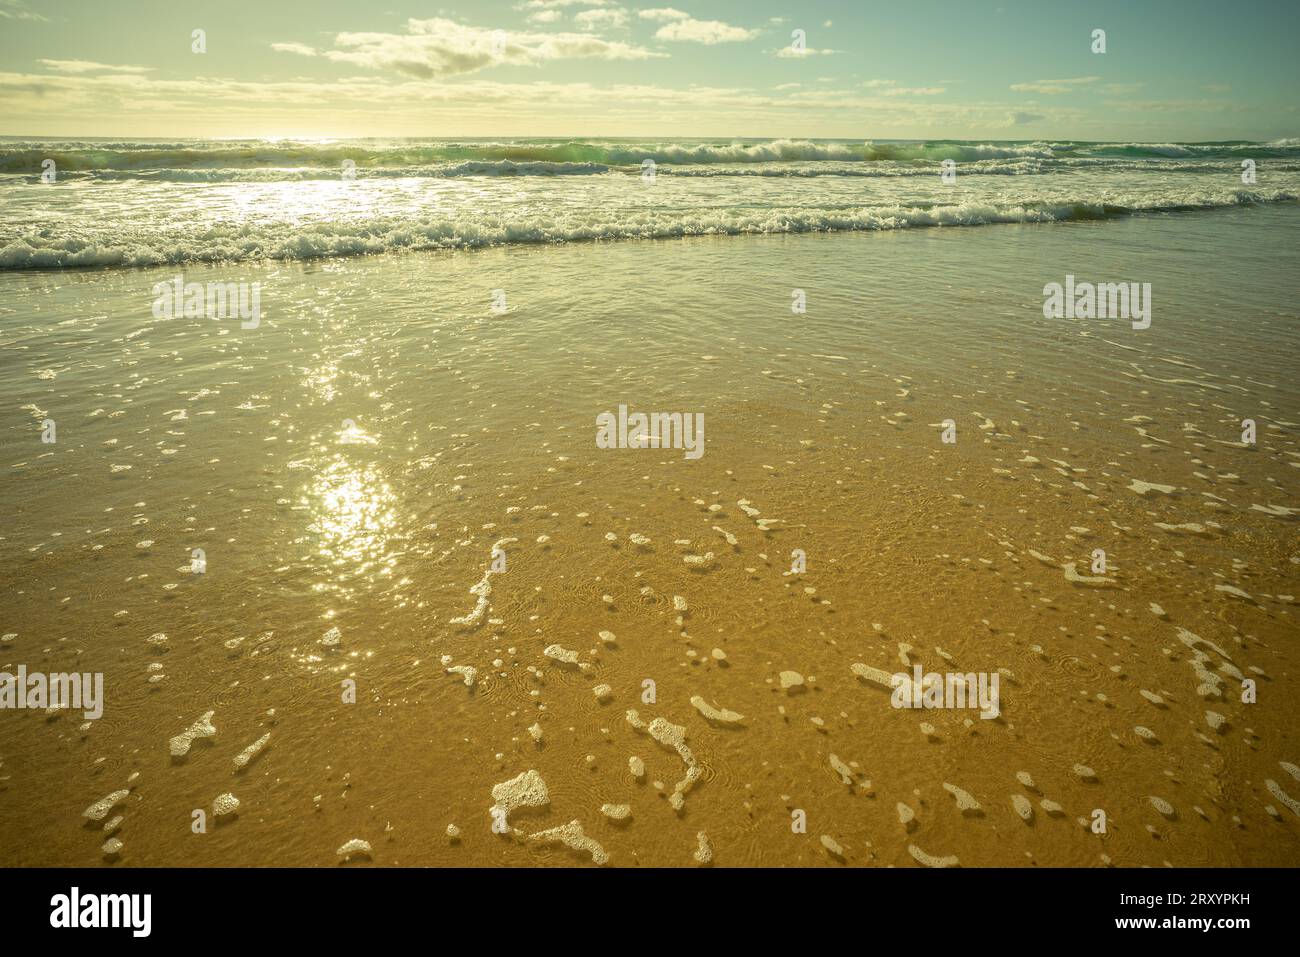 Colori pastello mentre le onde del surf si infrangono e rotolano sulla spiaggia di sabbia con il sole che splende nelle acque schiumose poco profonde. La mattina presto a Kawana, Sunshine Co Foto Stock